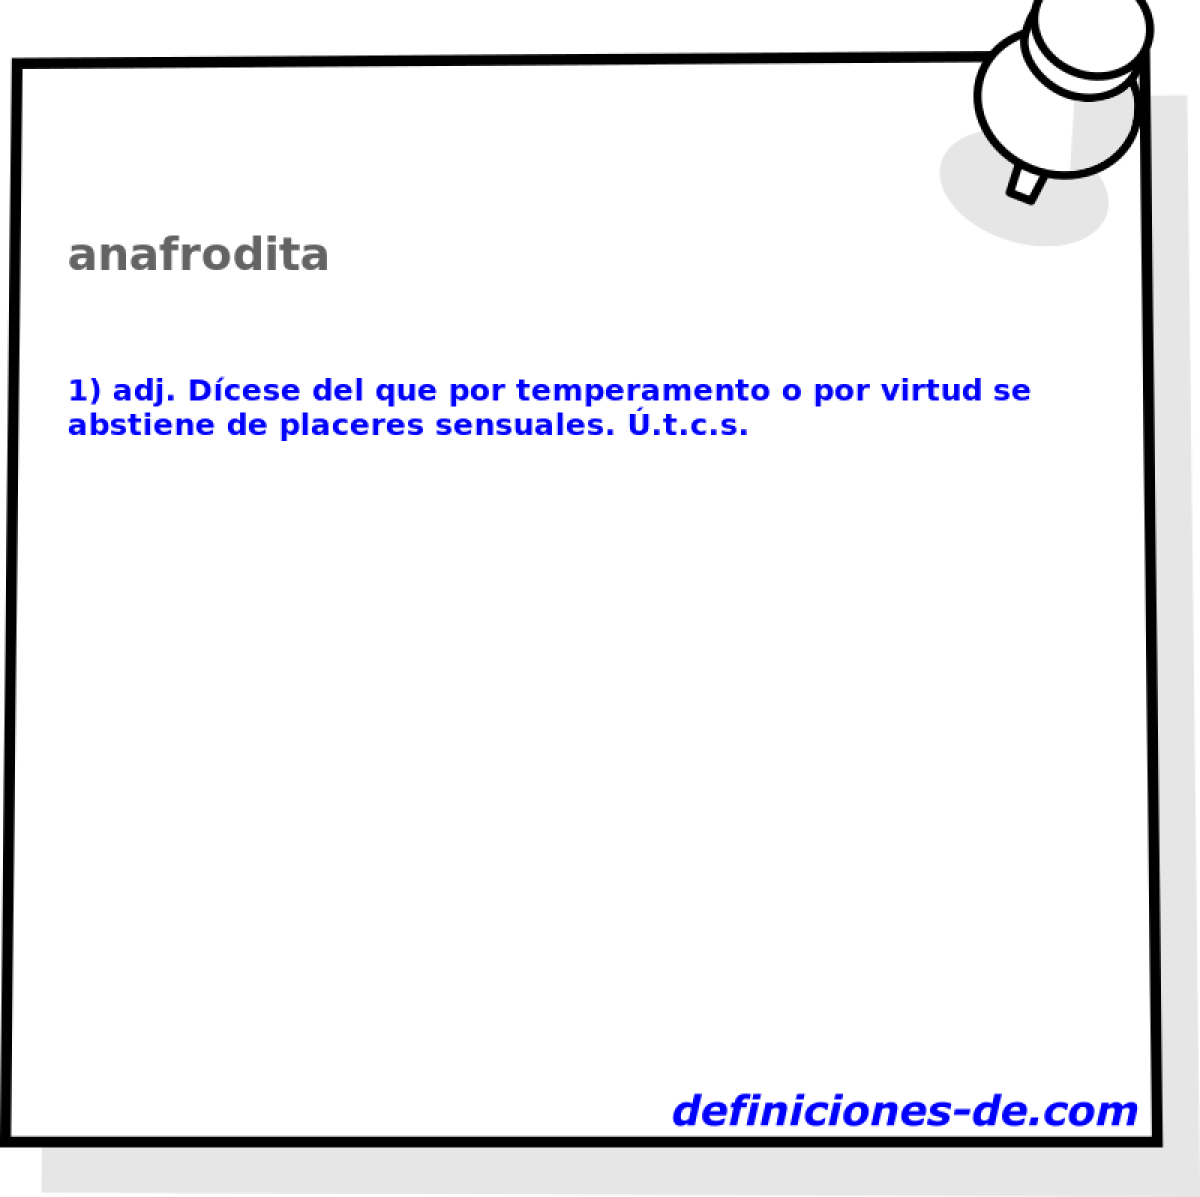 anafrodita 